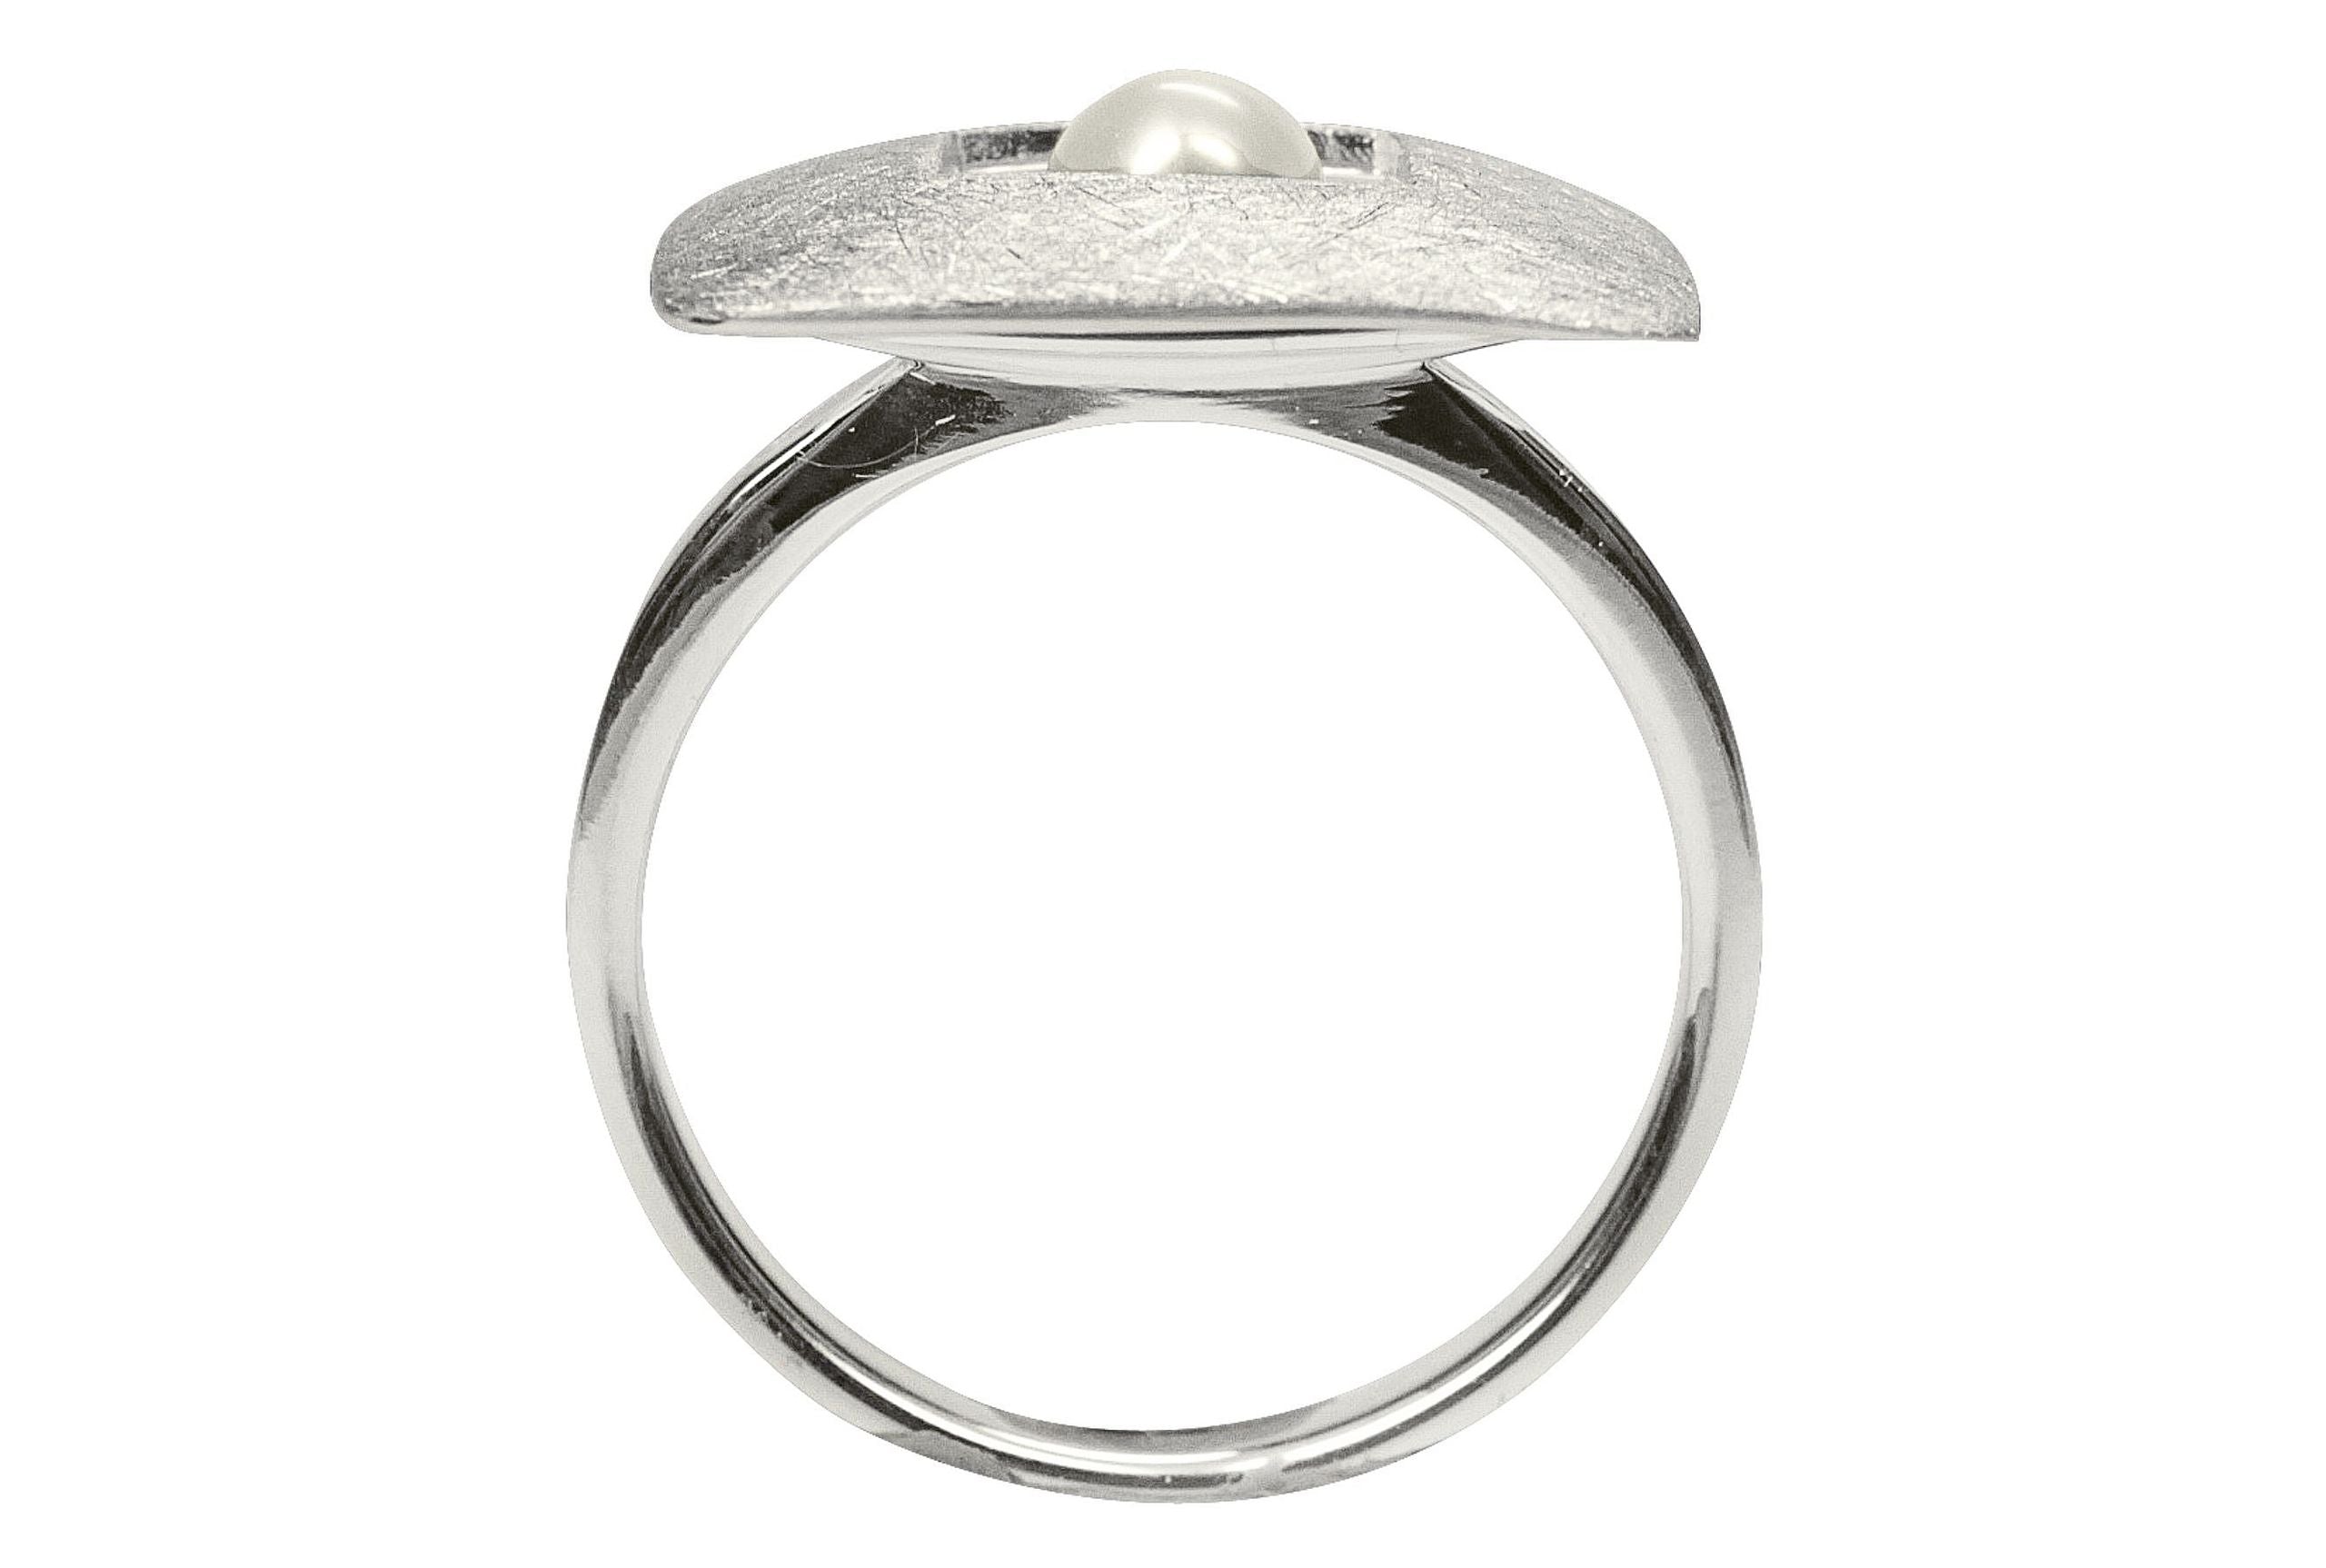 XL Ring "Quadrat mit Perle"